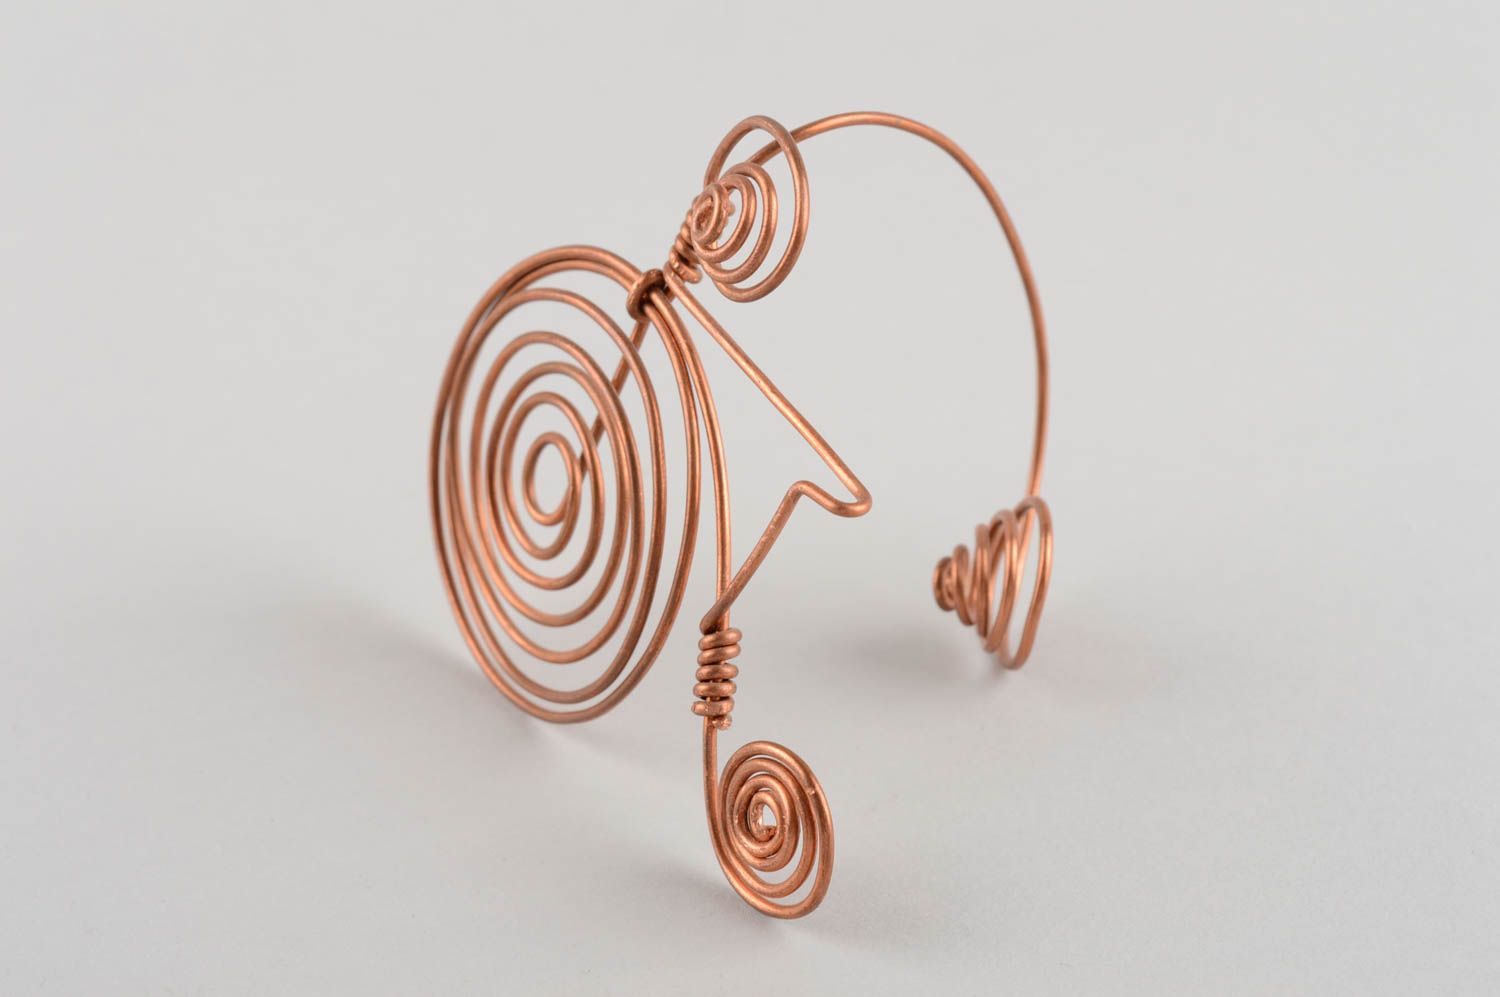 Handmade copper statue decorative copper wire figurine home decor ideas photo 5